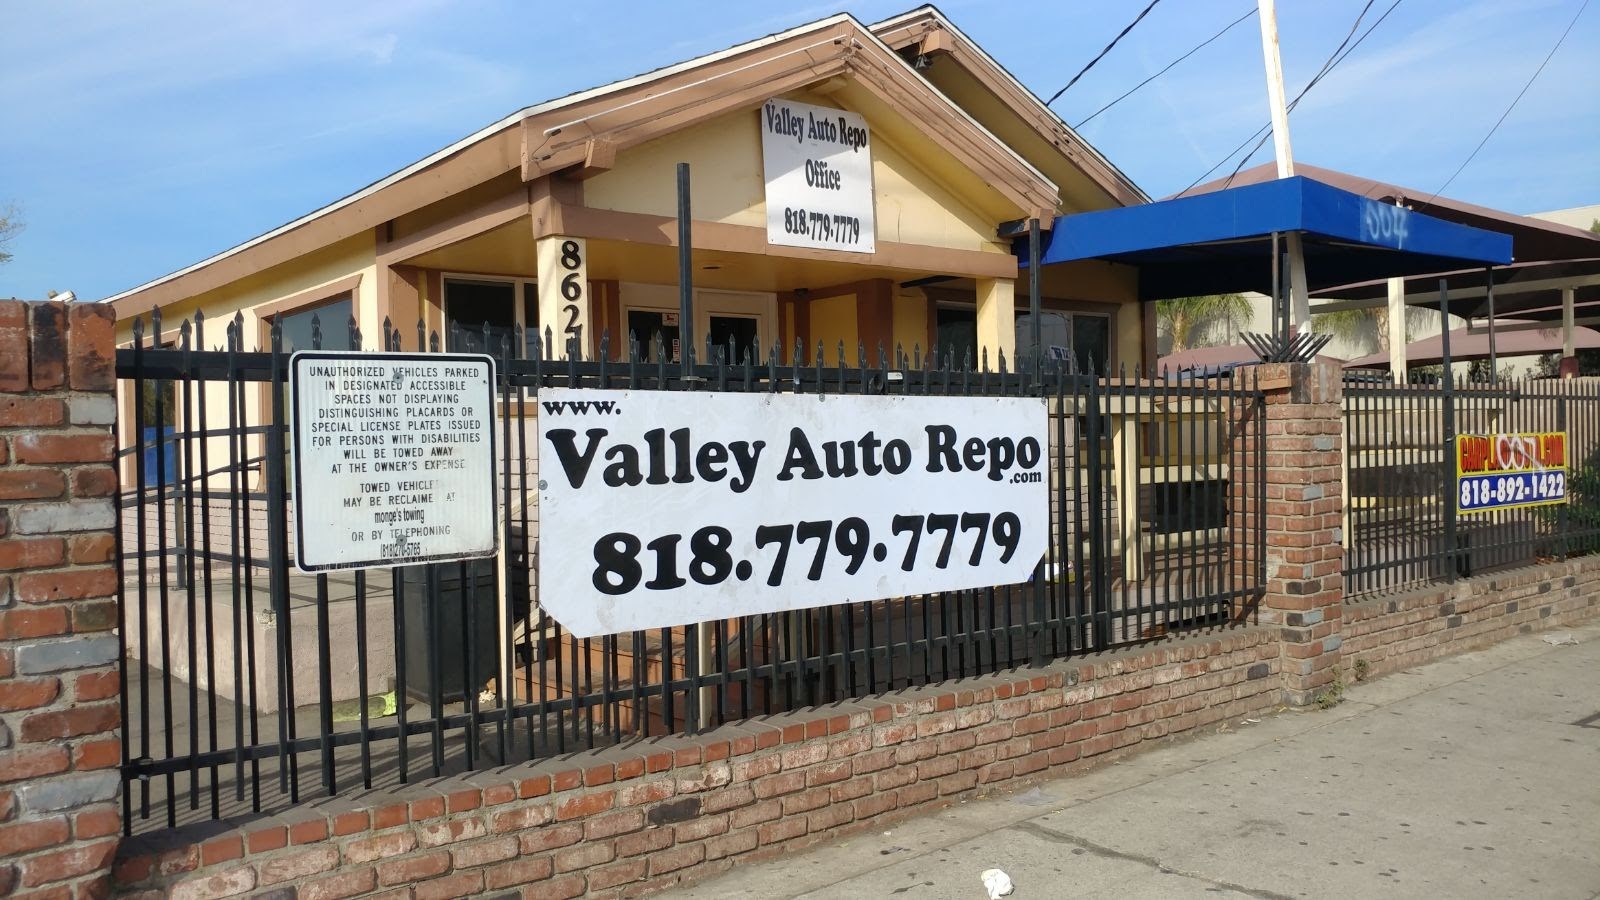 Valley Auto Repo